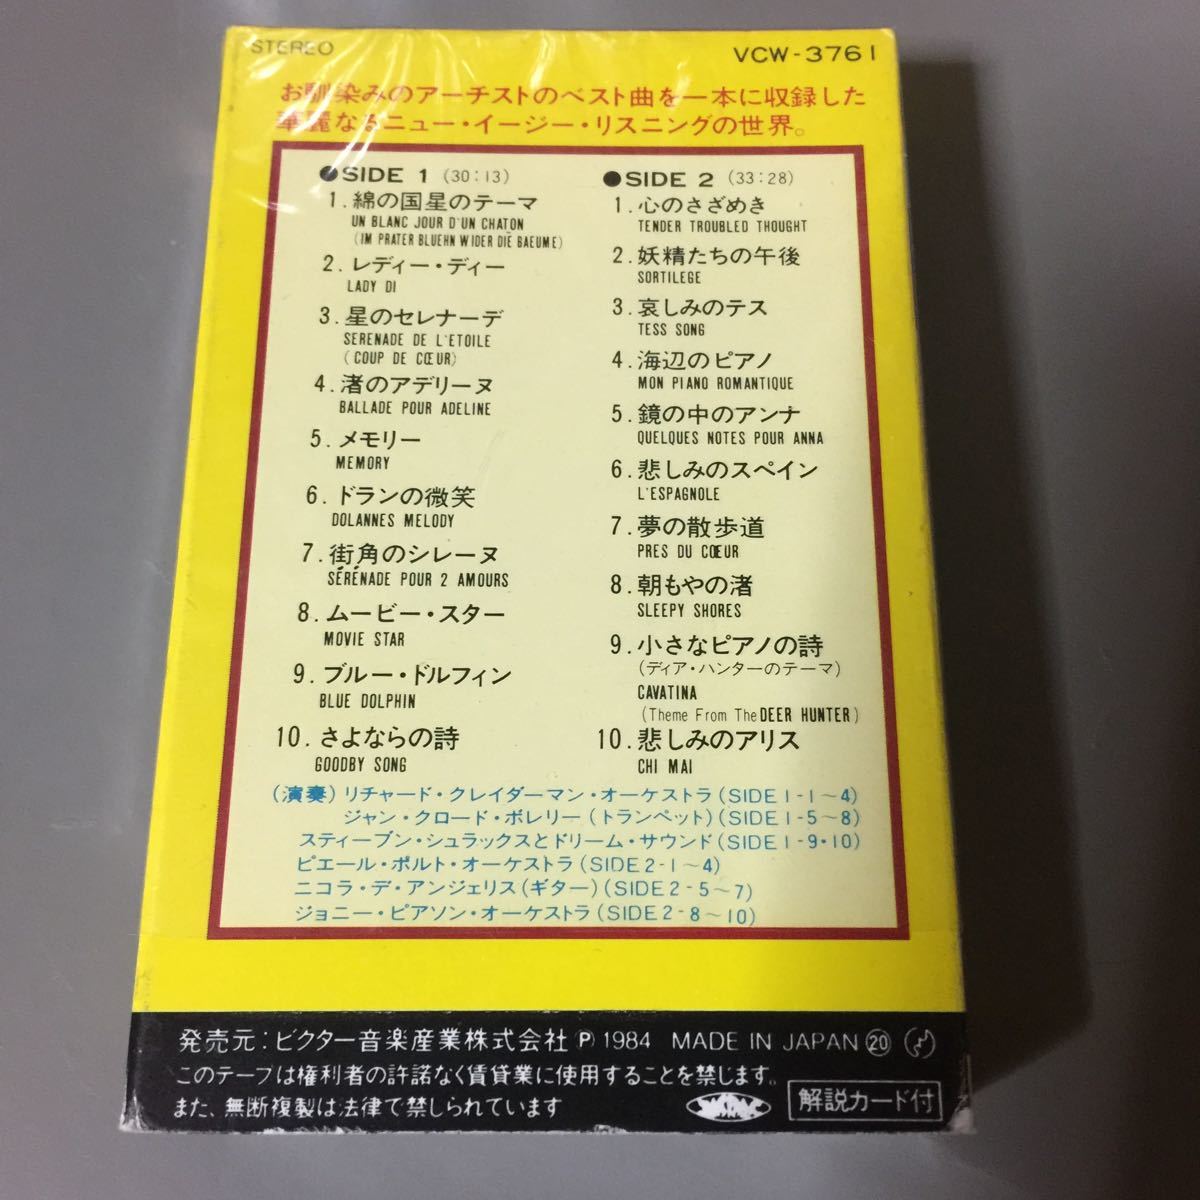 ニュー・イージー・リスニング ベスト集 国内盤カセットテープ【シュリンク残】